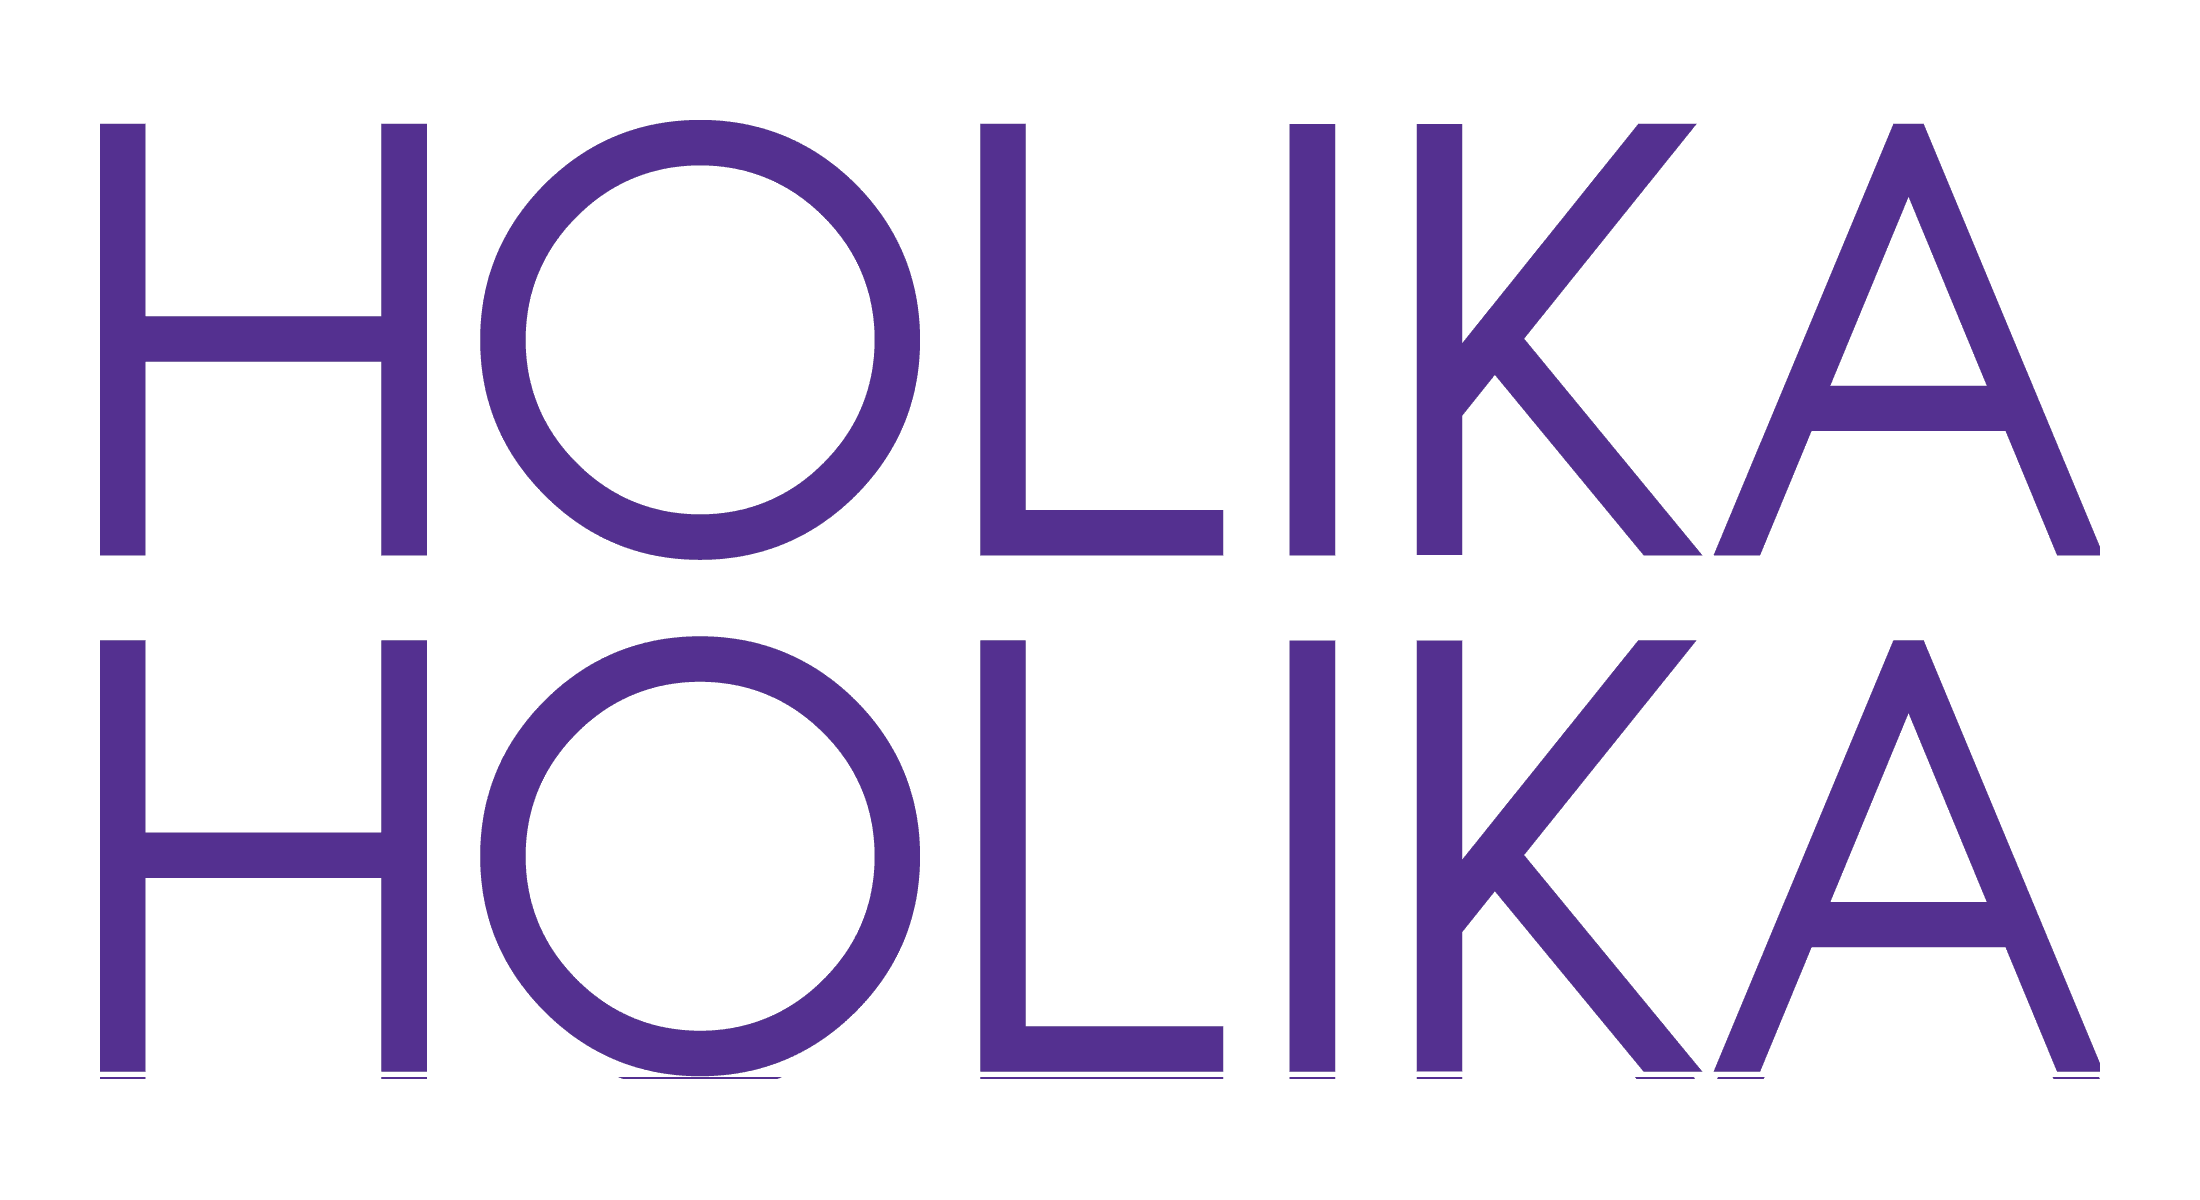 Mẫu thiết kế logo thương hiệu công ty HOLIKA HOLIKA 1